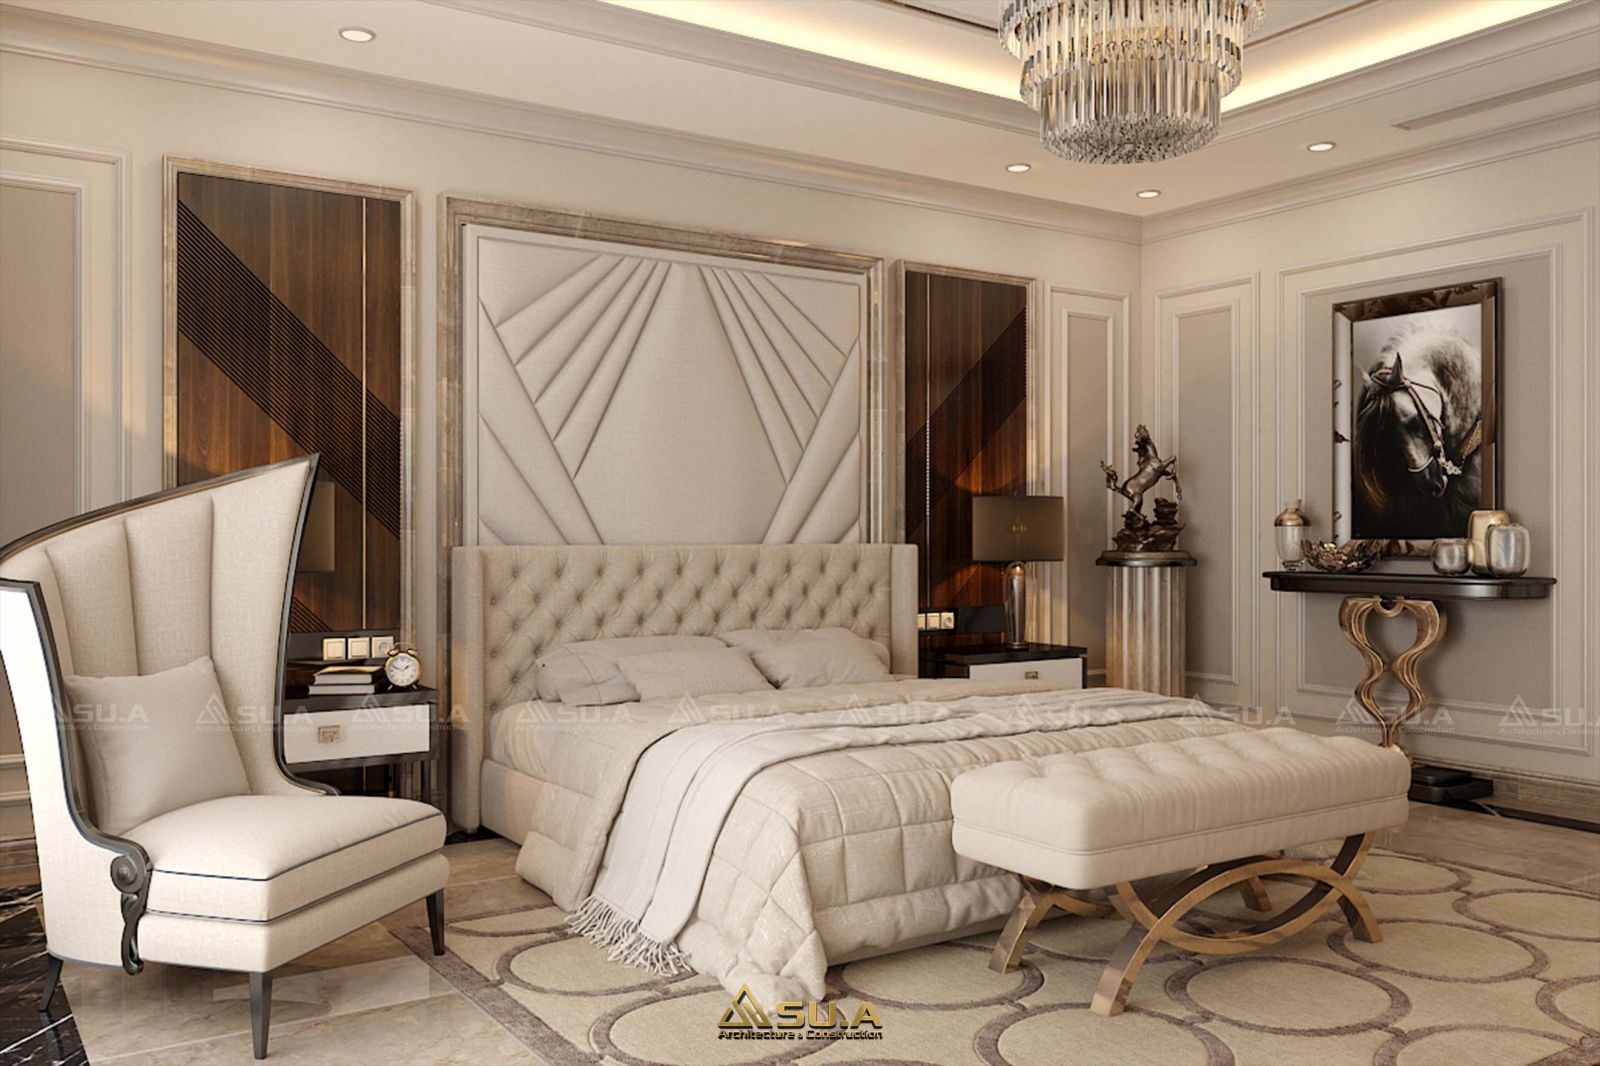 Giường ngủ thiết kế hiện đại tích hợp hệ đầu giường vừa làm kệ trang trí, vừa là bàn trang điểm tiện dụng